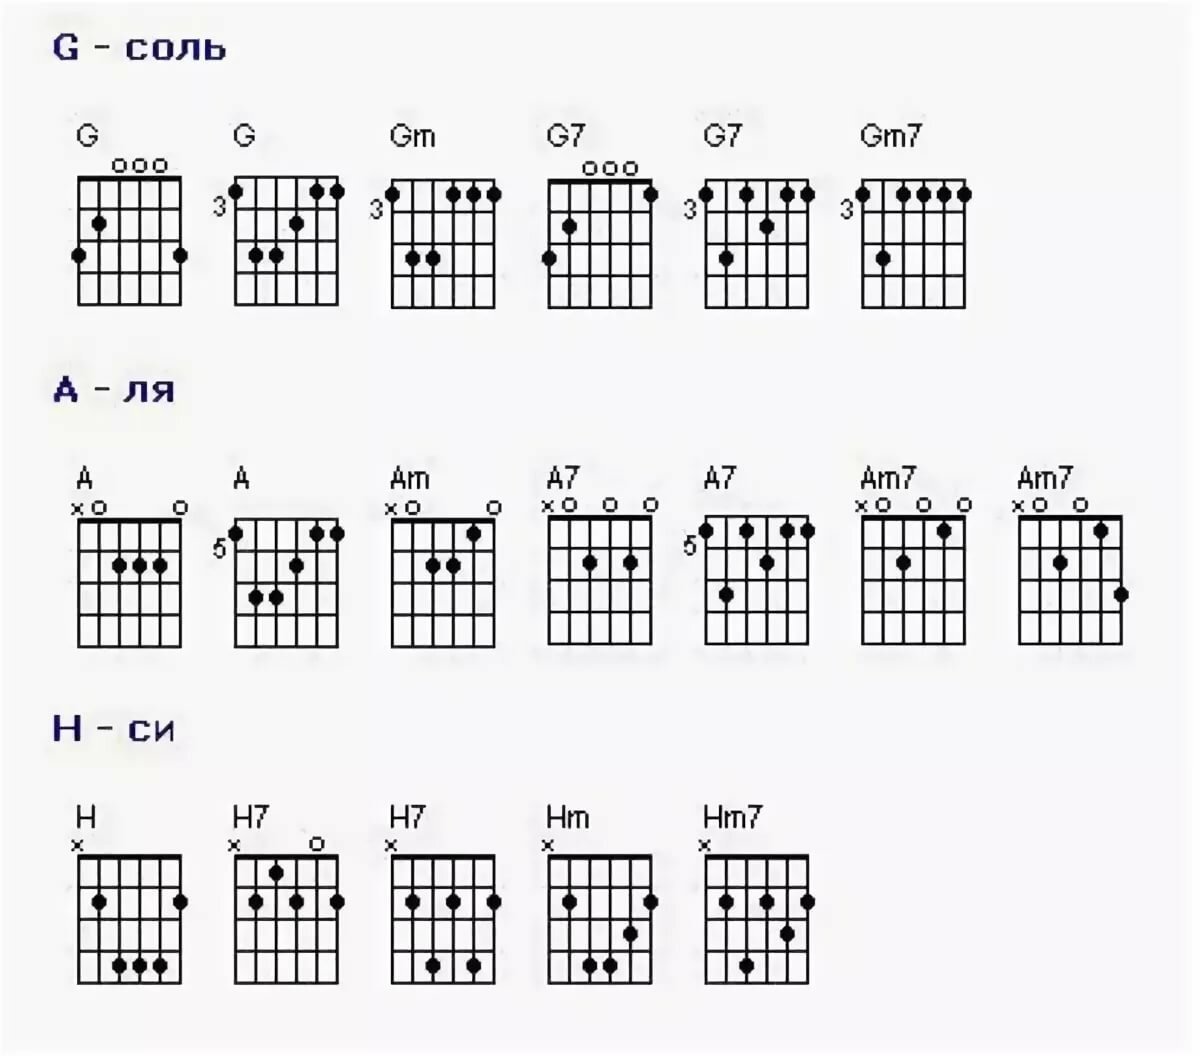 Таблица аккордов для начинающих. Аккорды для гитары для начинающих 6 струн. Базовые аккорды на гитаре 6 струн. Аккорды на гитаре 6 струн схема. Схемы аккордов 6 струнной гитары.